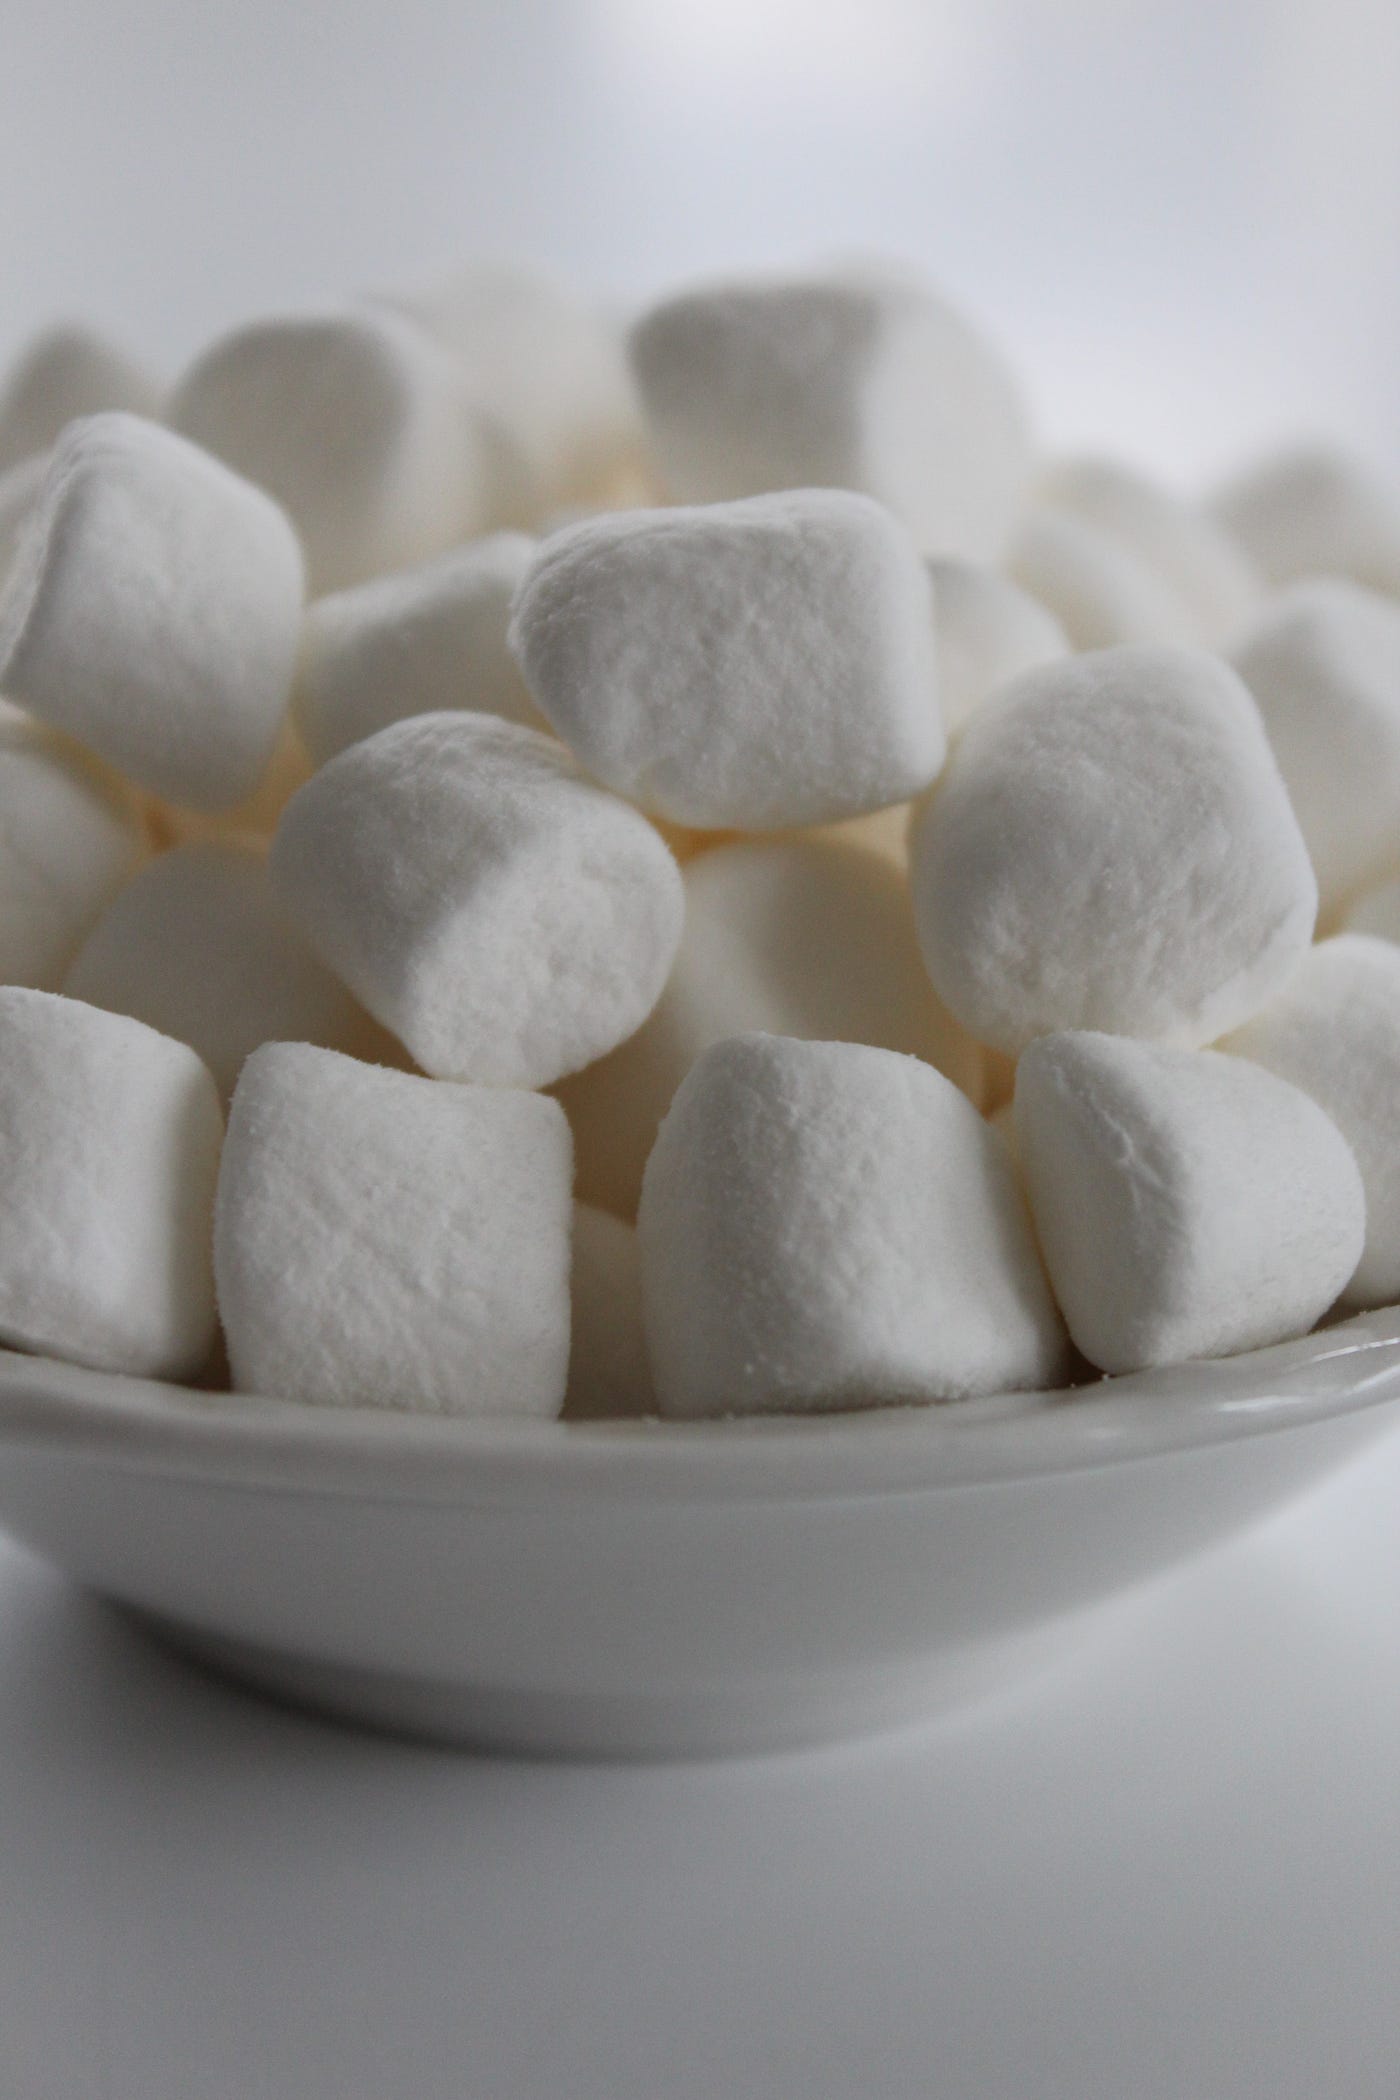 A bowl of white marshmallows on a white table. - Marshmallows